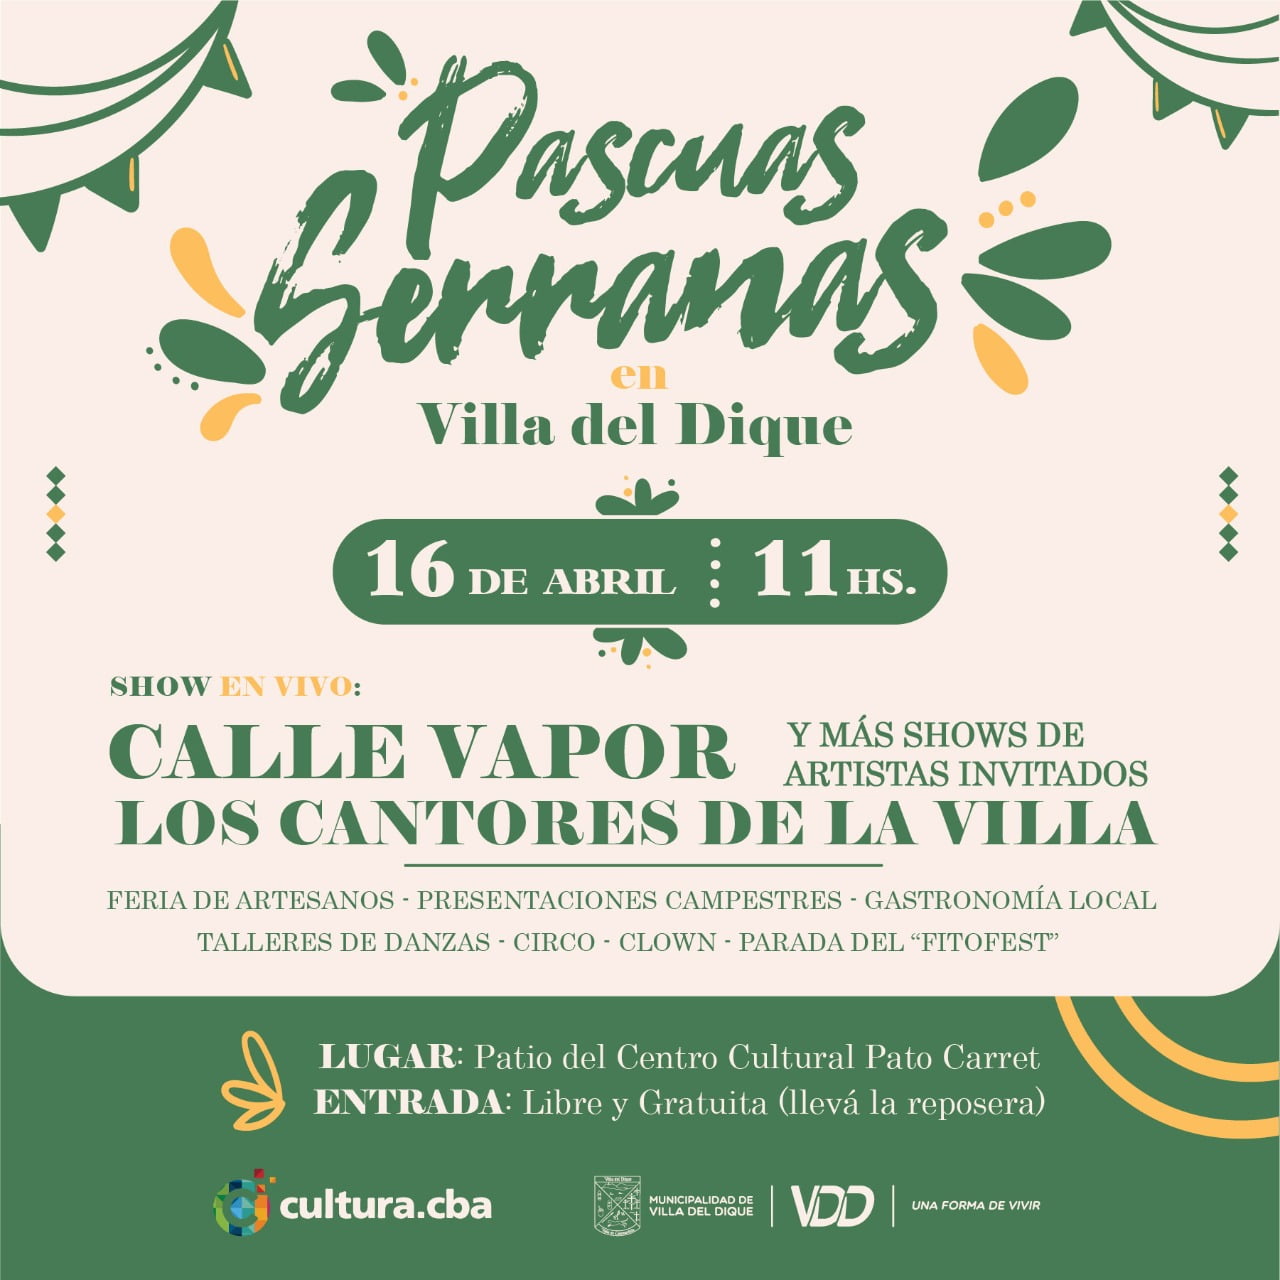 Semana Santa en Calamuchita: la propuesta de Villa del Dique es Pascuas Serranas-La Ola Digital